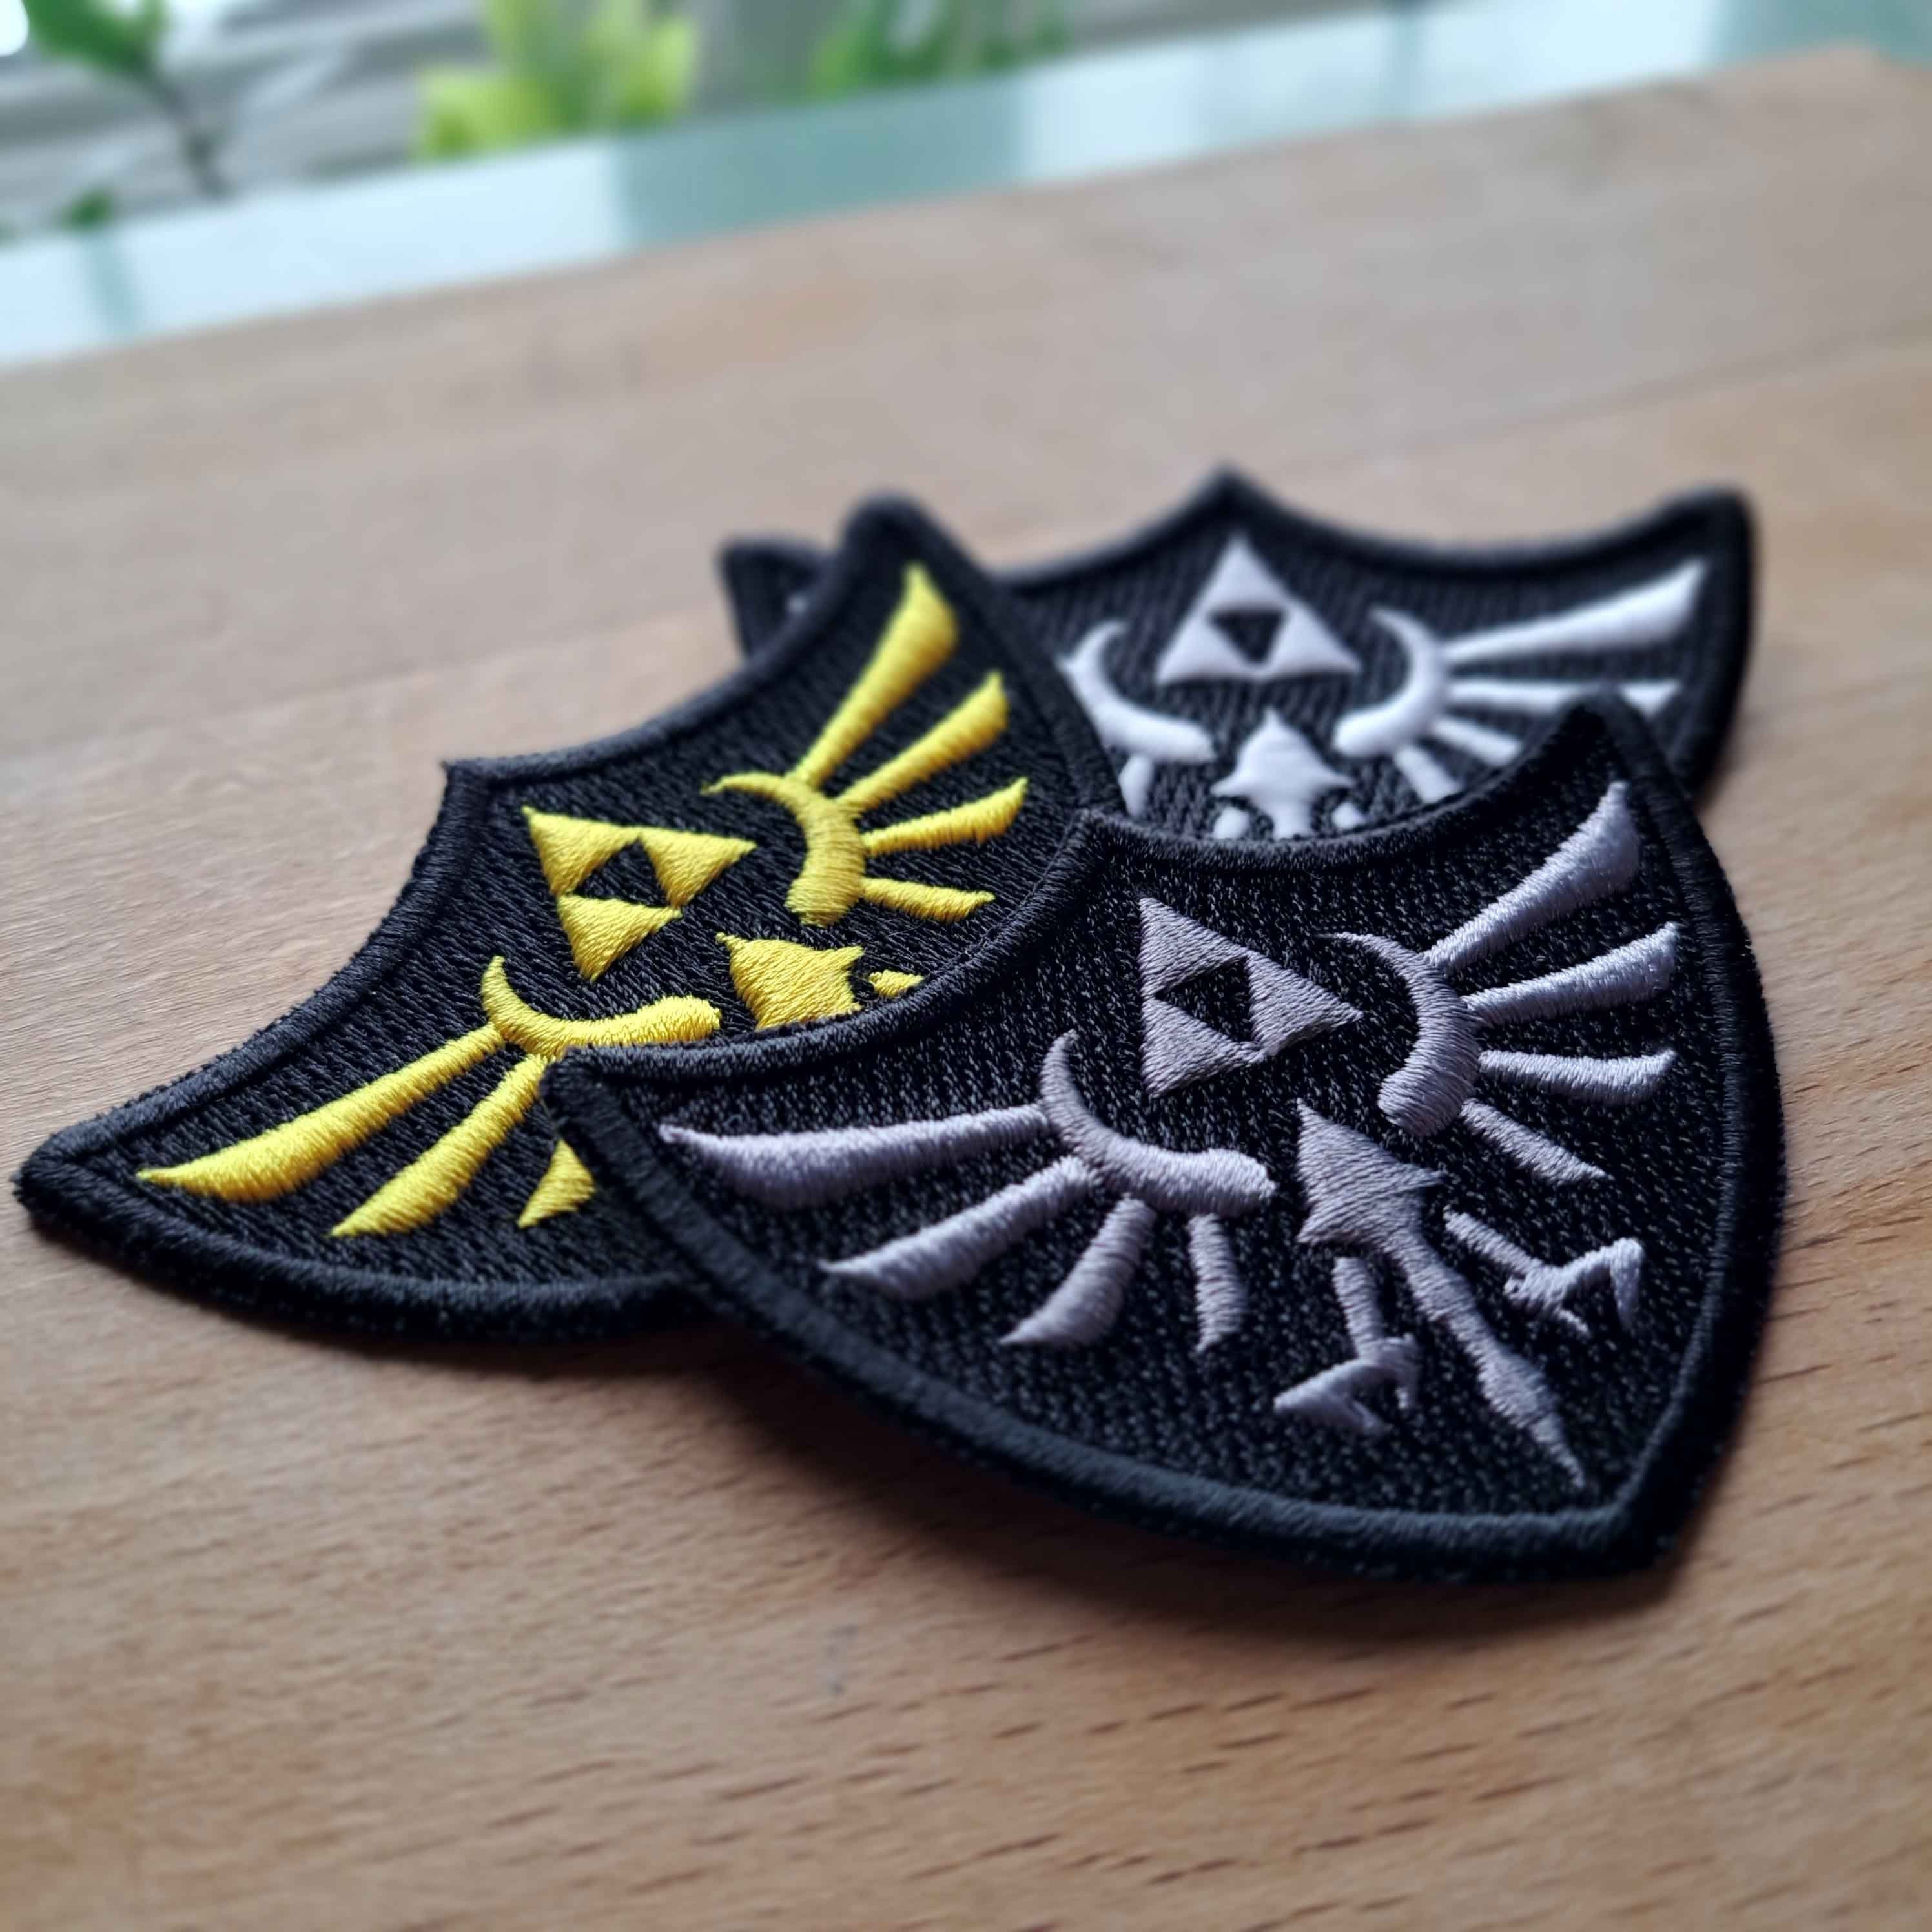 Zelda shield/emblem - Iron on patch